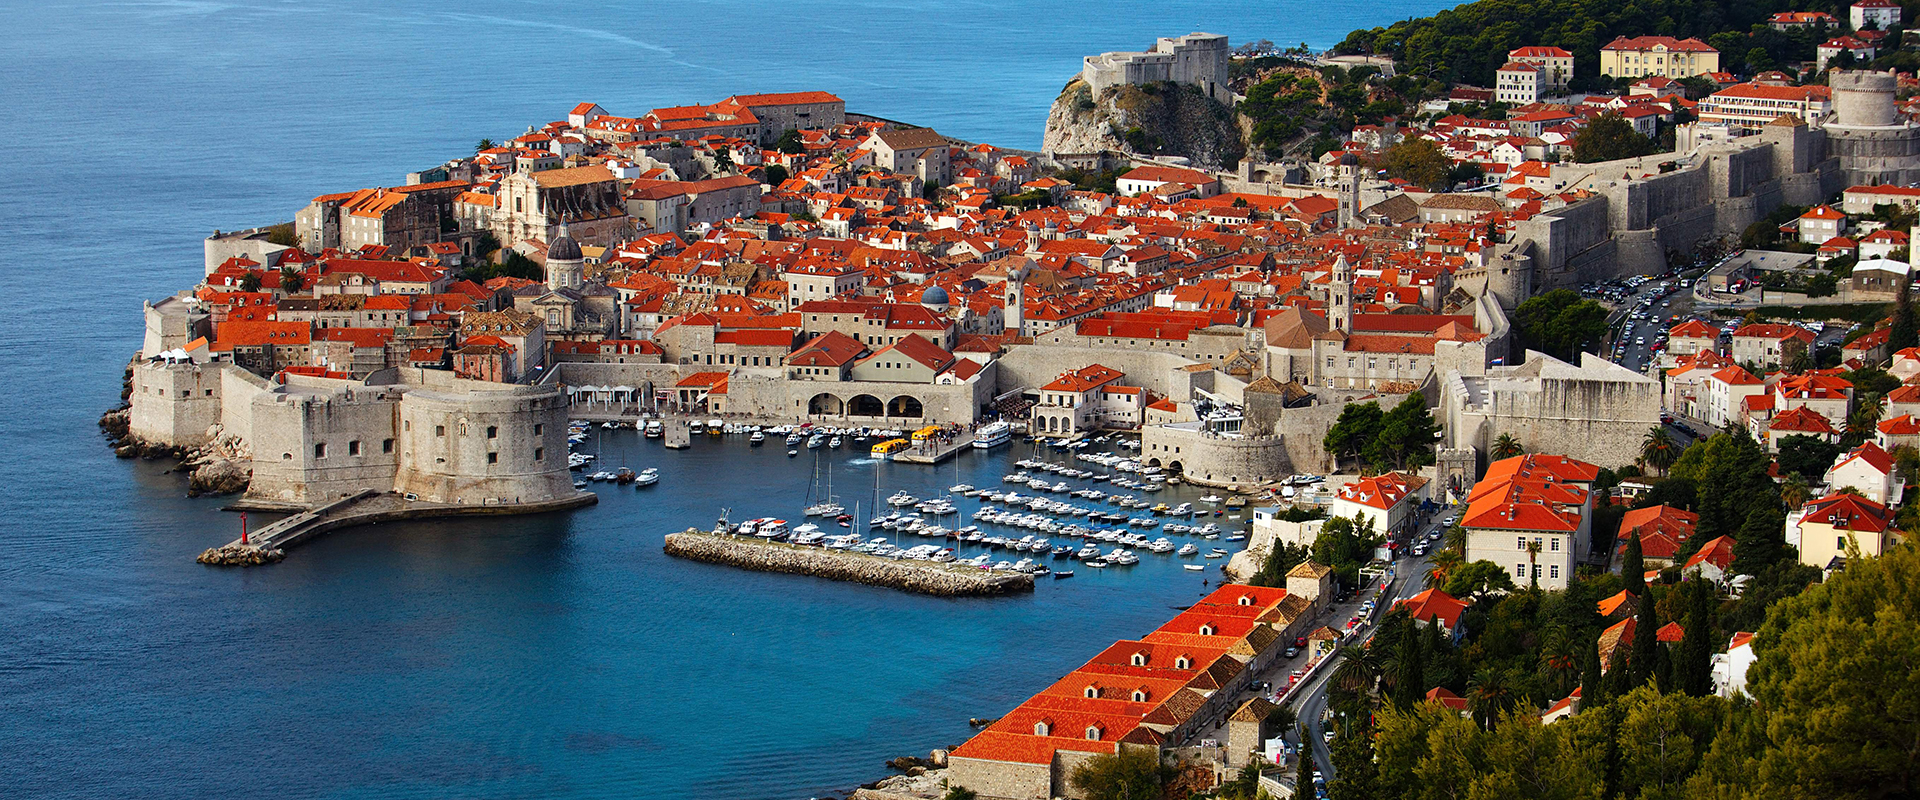 Dubrovnik. La città medievale della tua crociera nel Mediterraneo